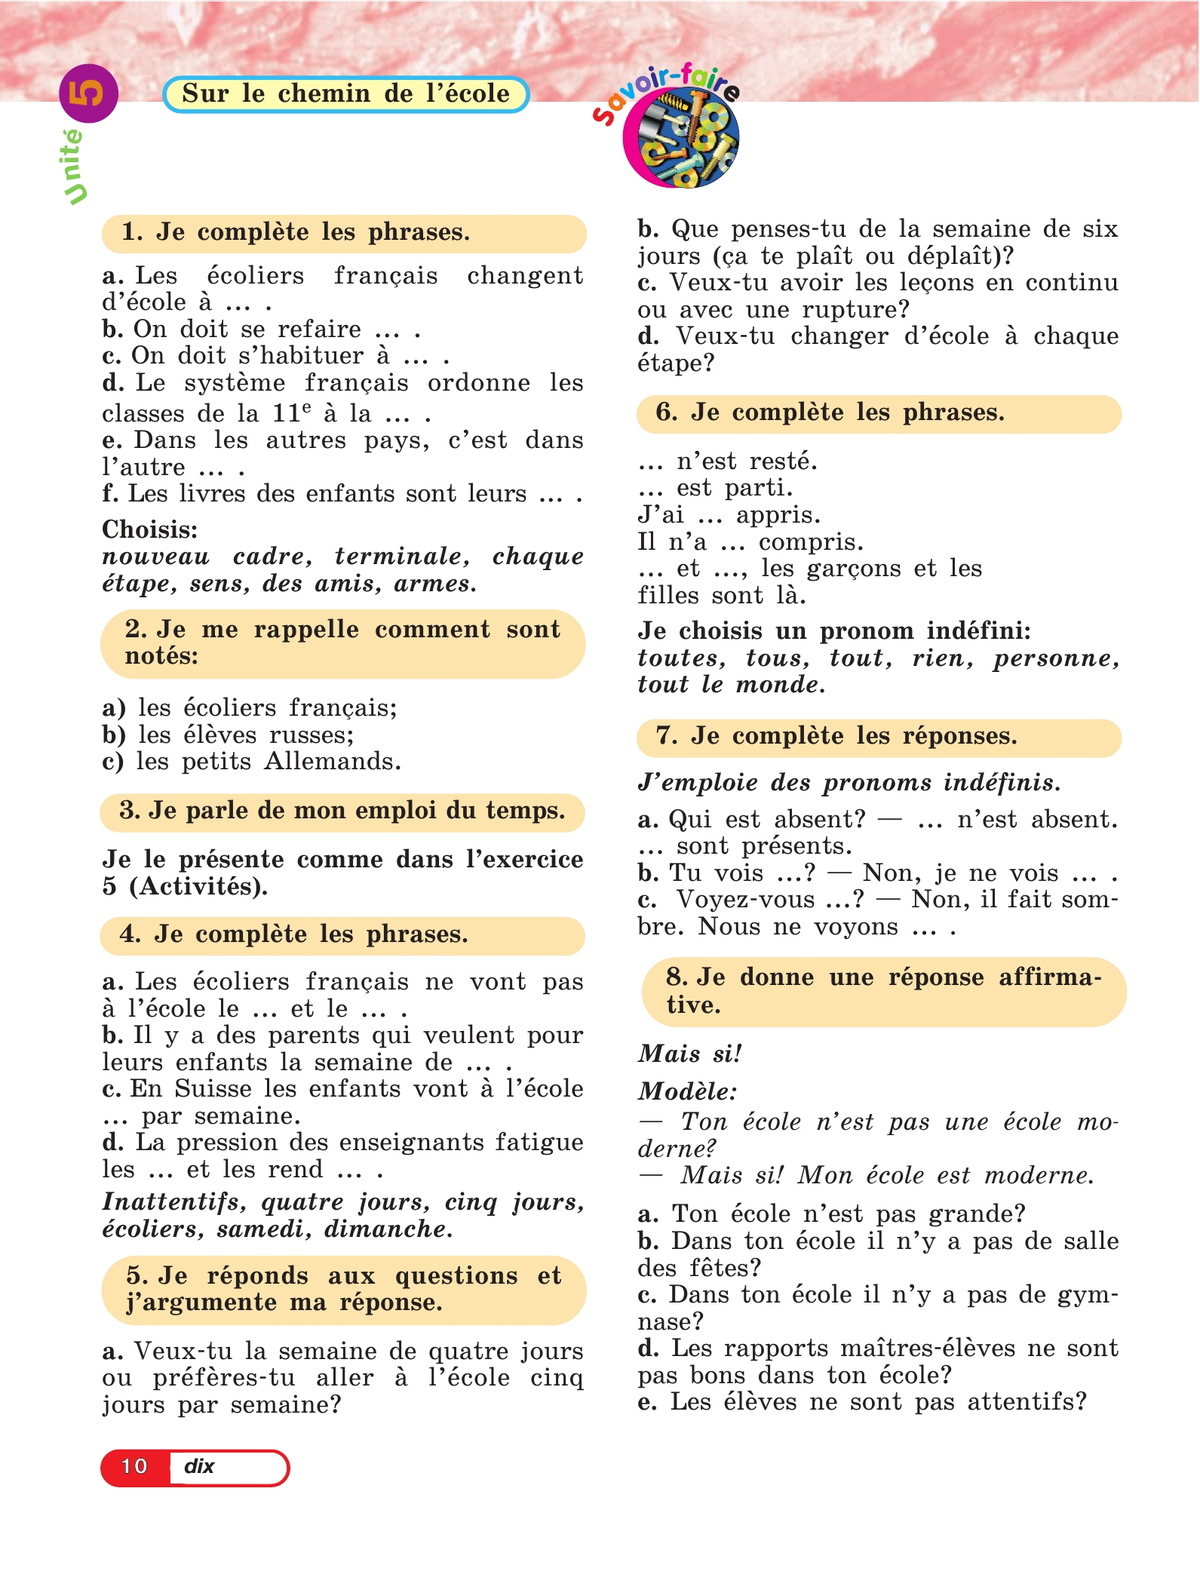 Французский язык. 5 класс. Углублённый уровень. Учебник. В 2 ч. Часть 2. 9